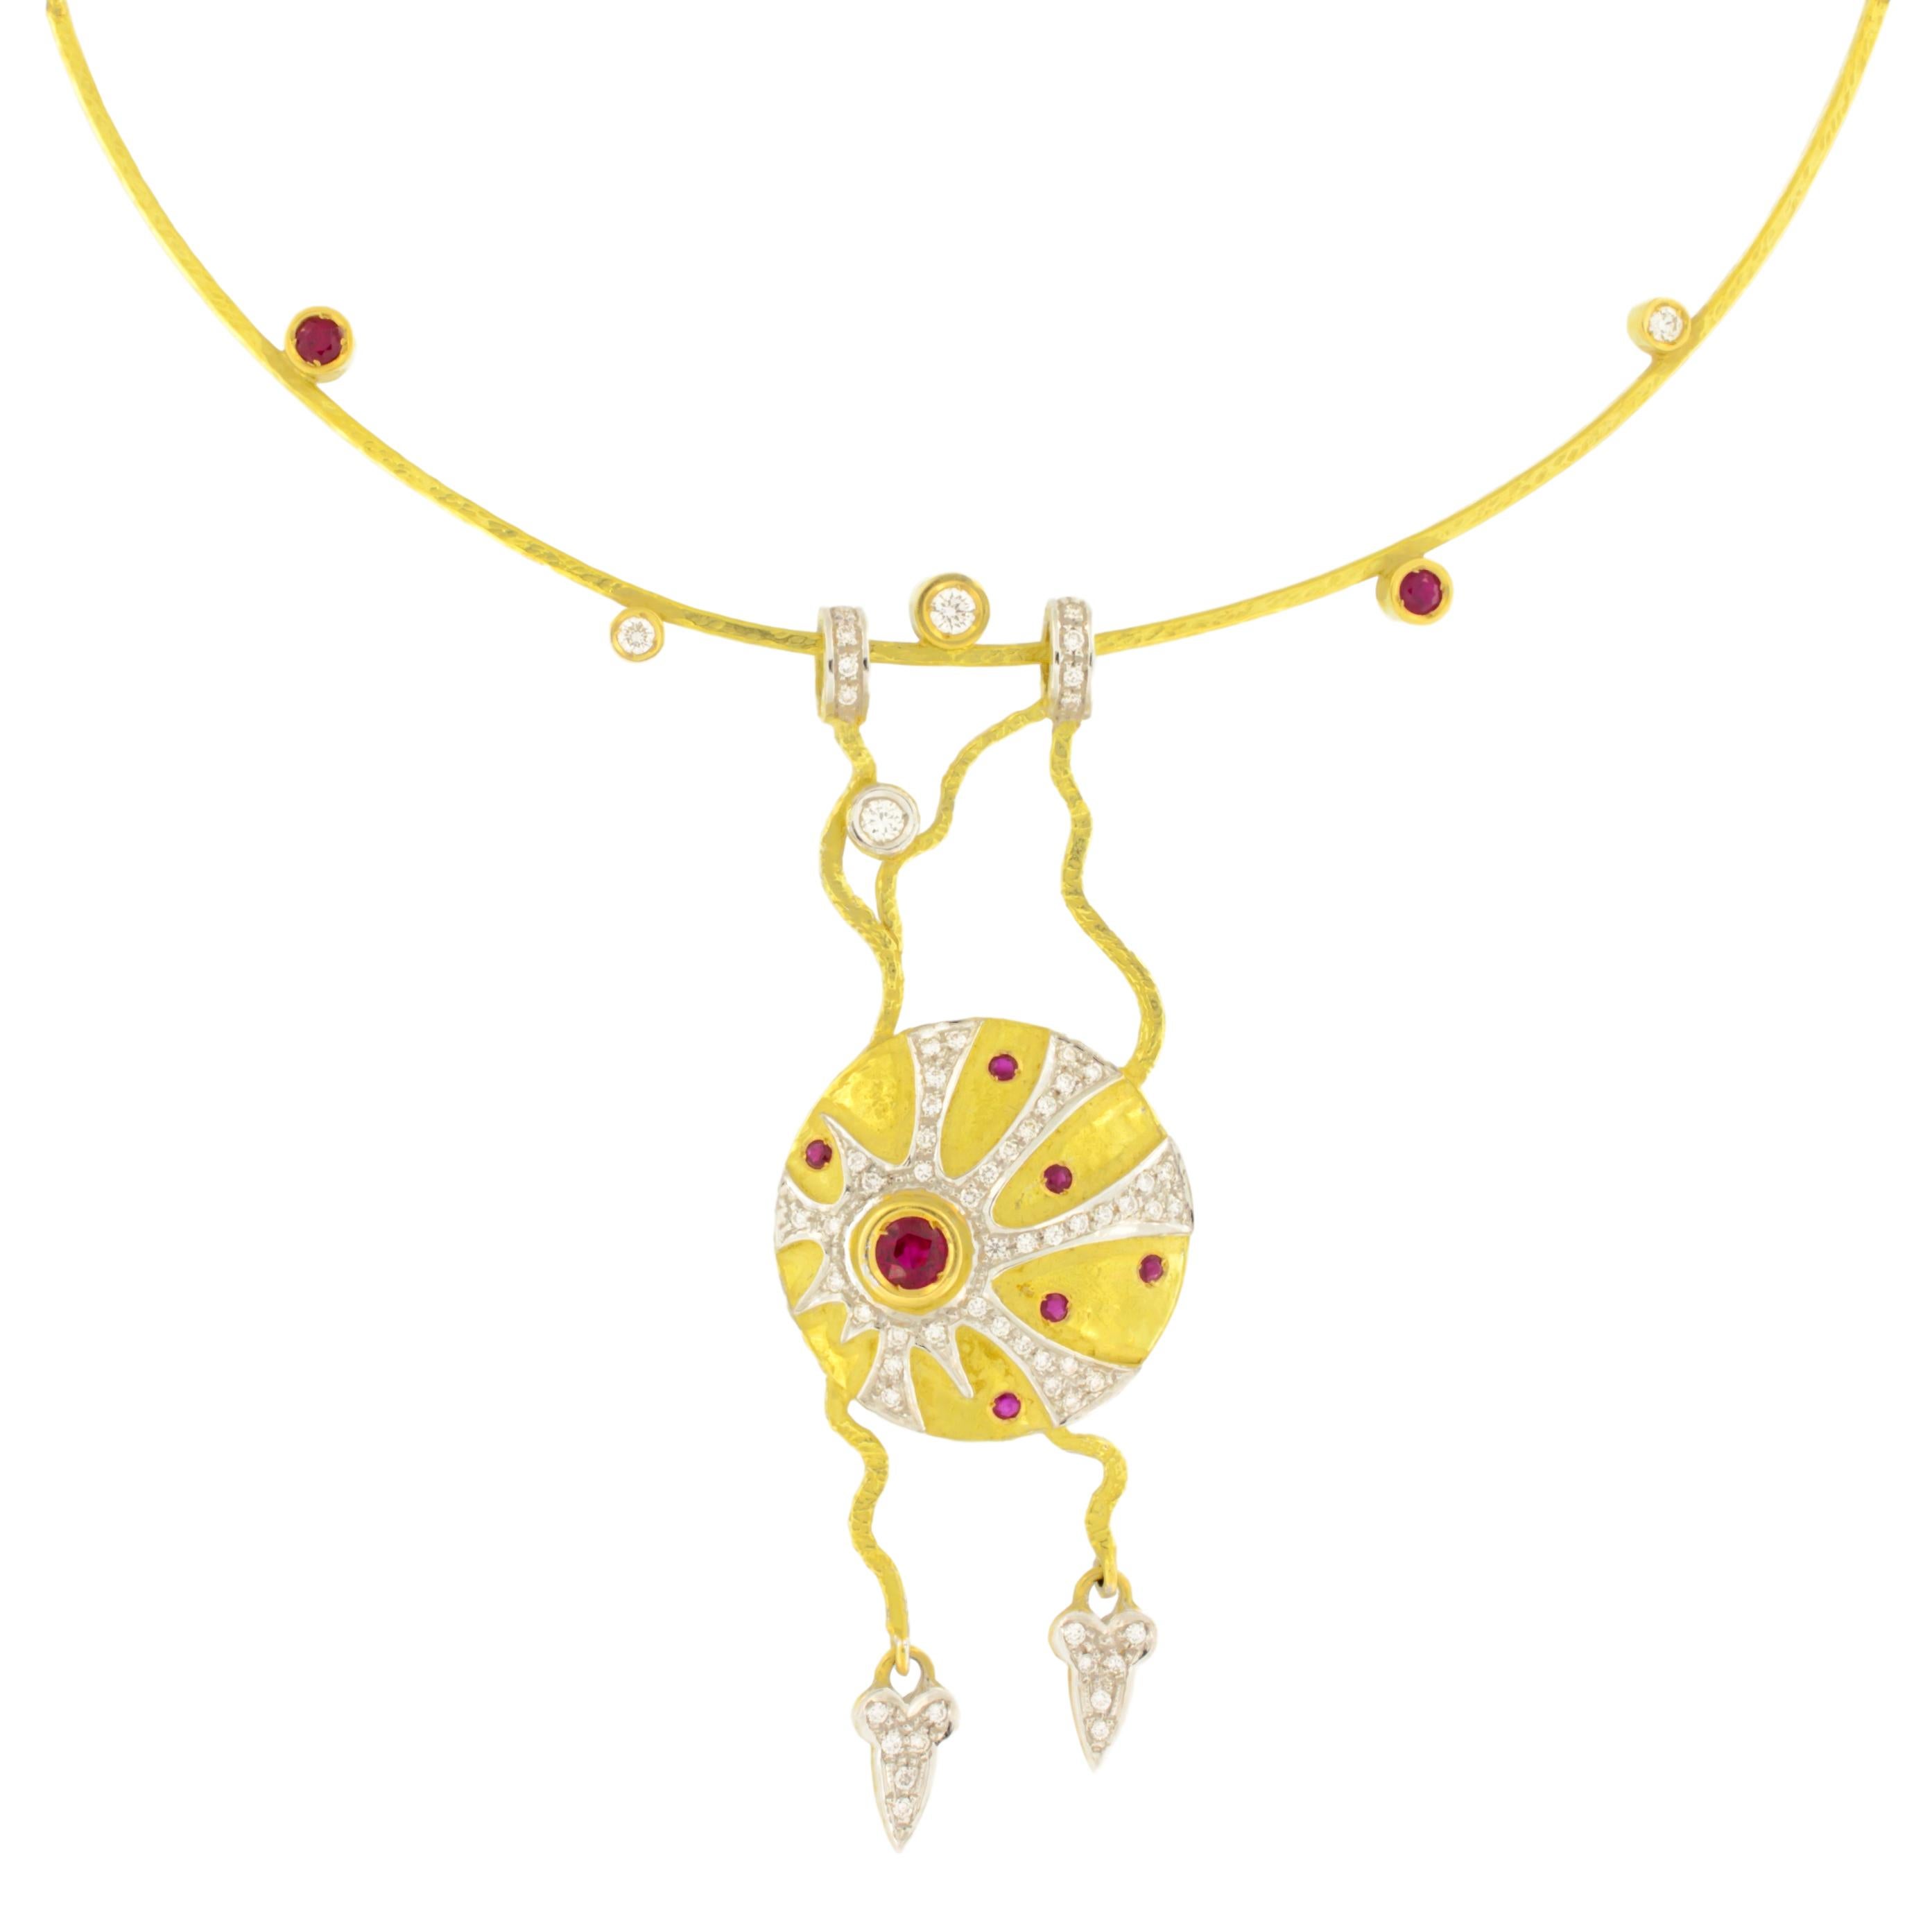 Einzigartige Halskette mit Rubinen und Diamanten aus satiniertem Gelbgold, aus der Kollektion 